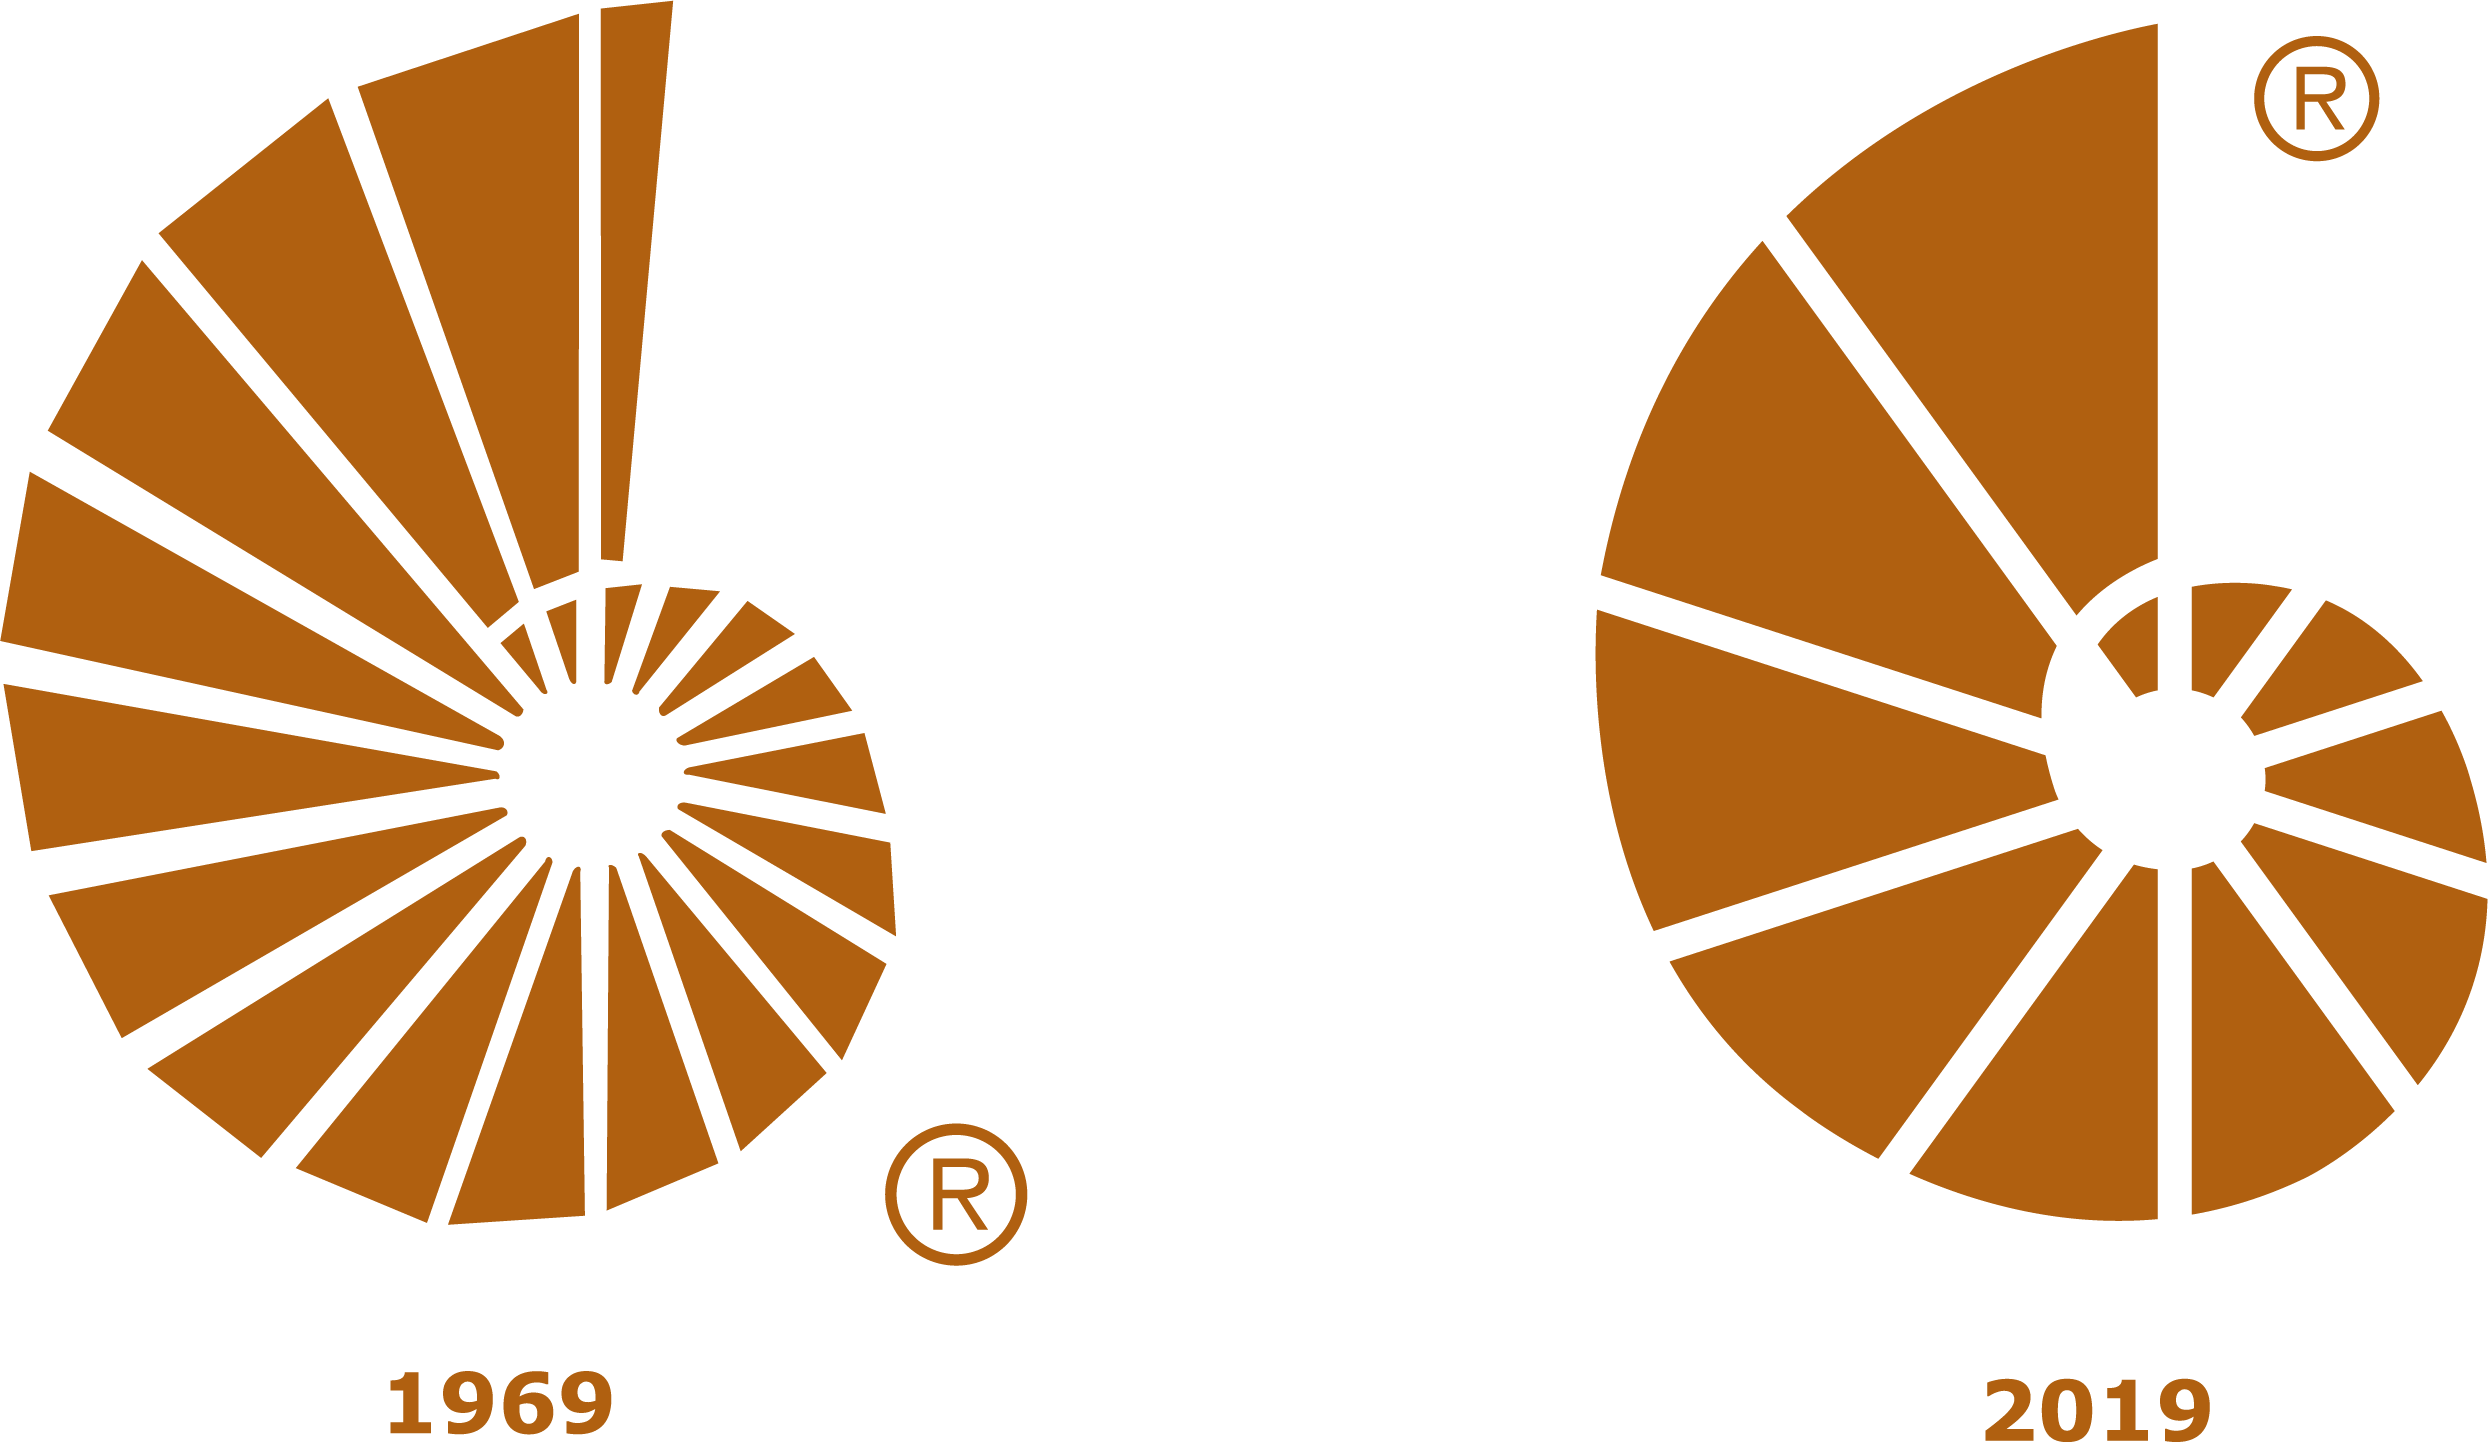 Le nautile d’Optimum Groupe financier en 1969. En 2019, un nouveau nautile modernisé par le nombre de segments colorés réduit de moitié et l’espace entre chaque segment légèrement augmenté pour une lisibilité optimale.